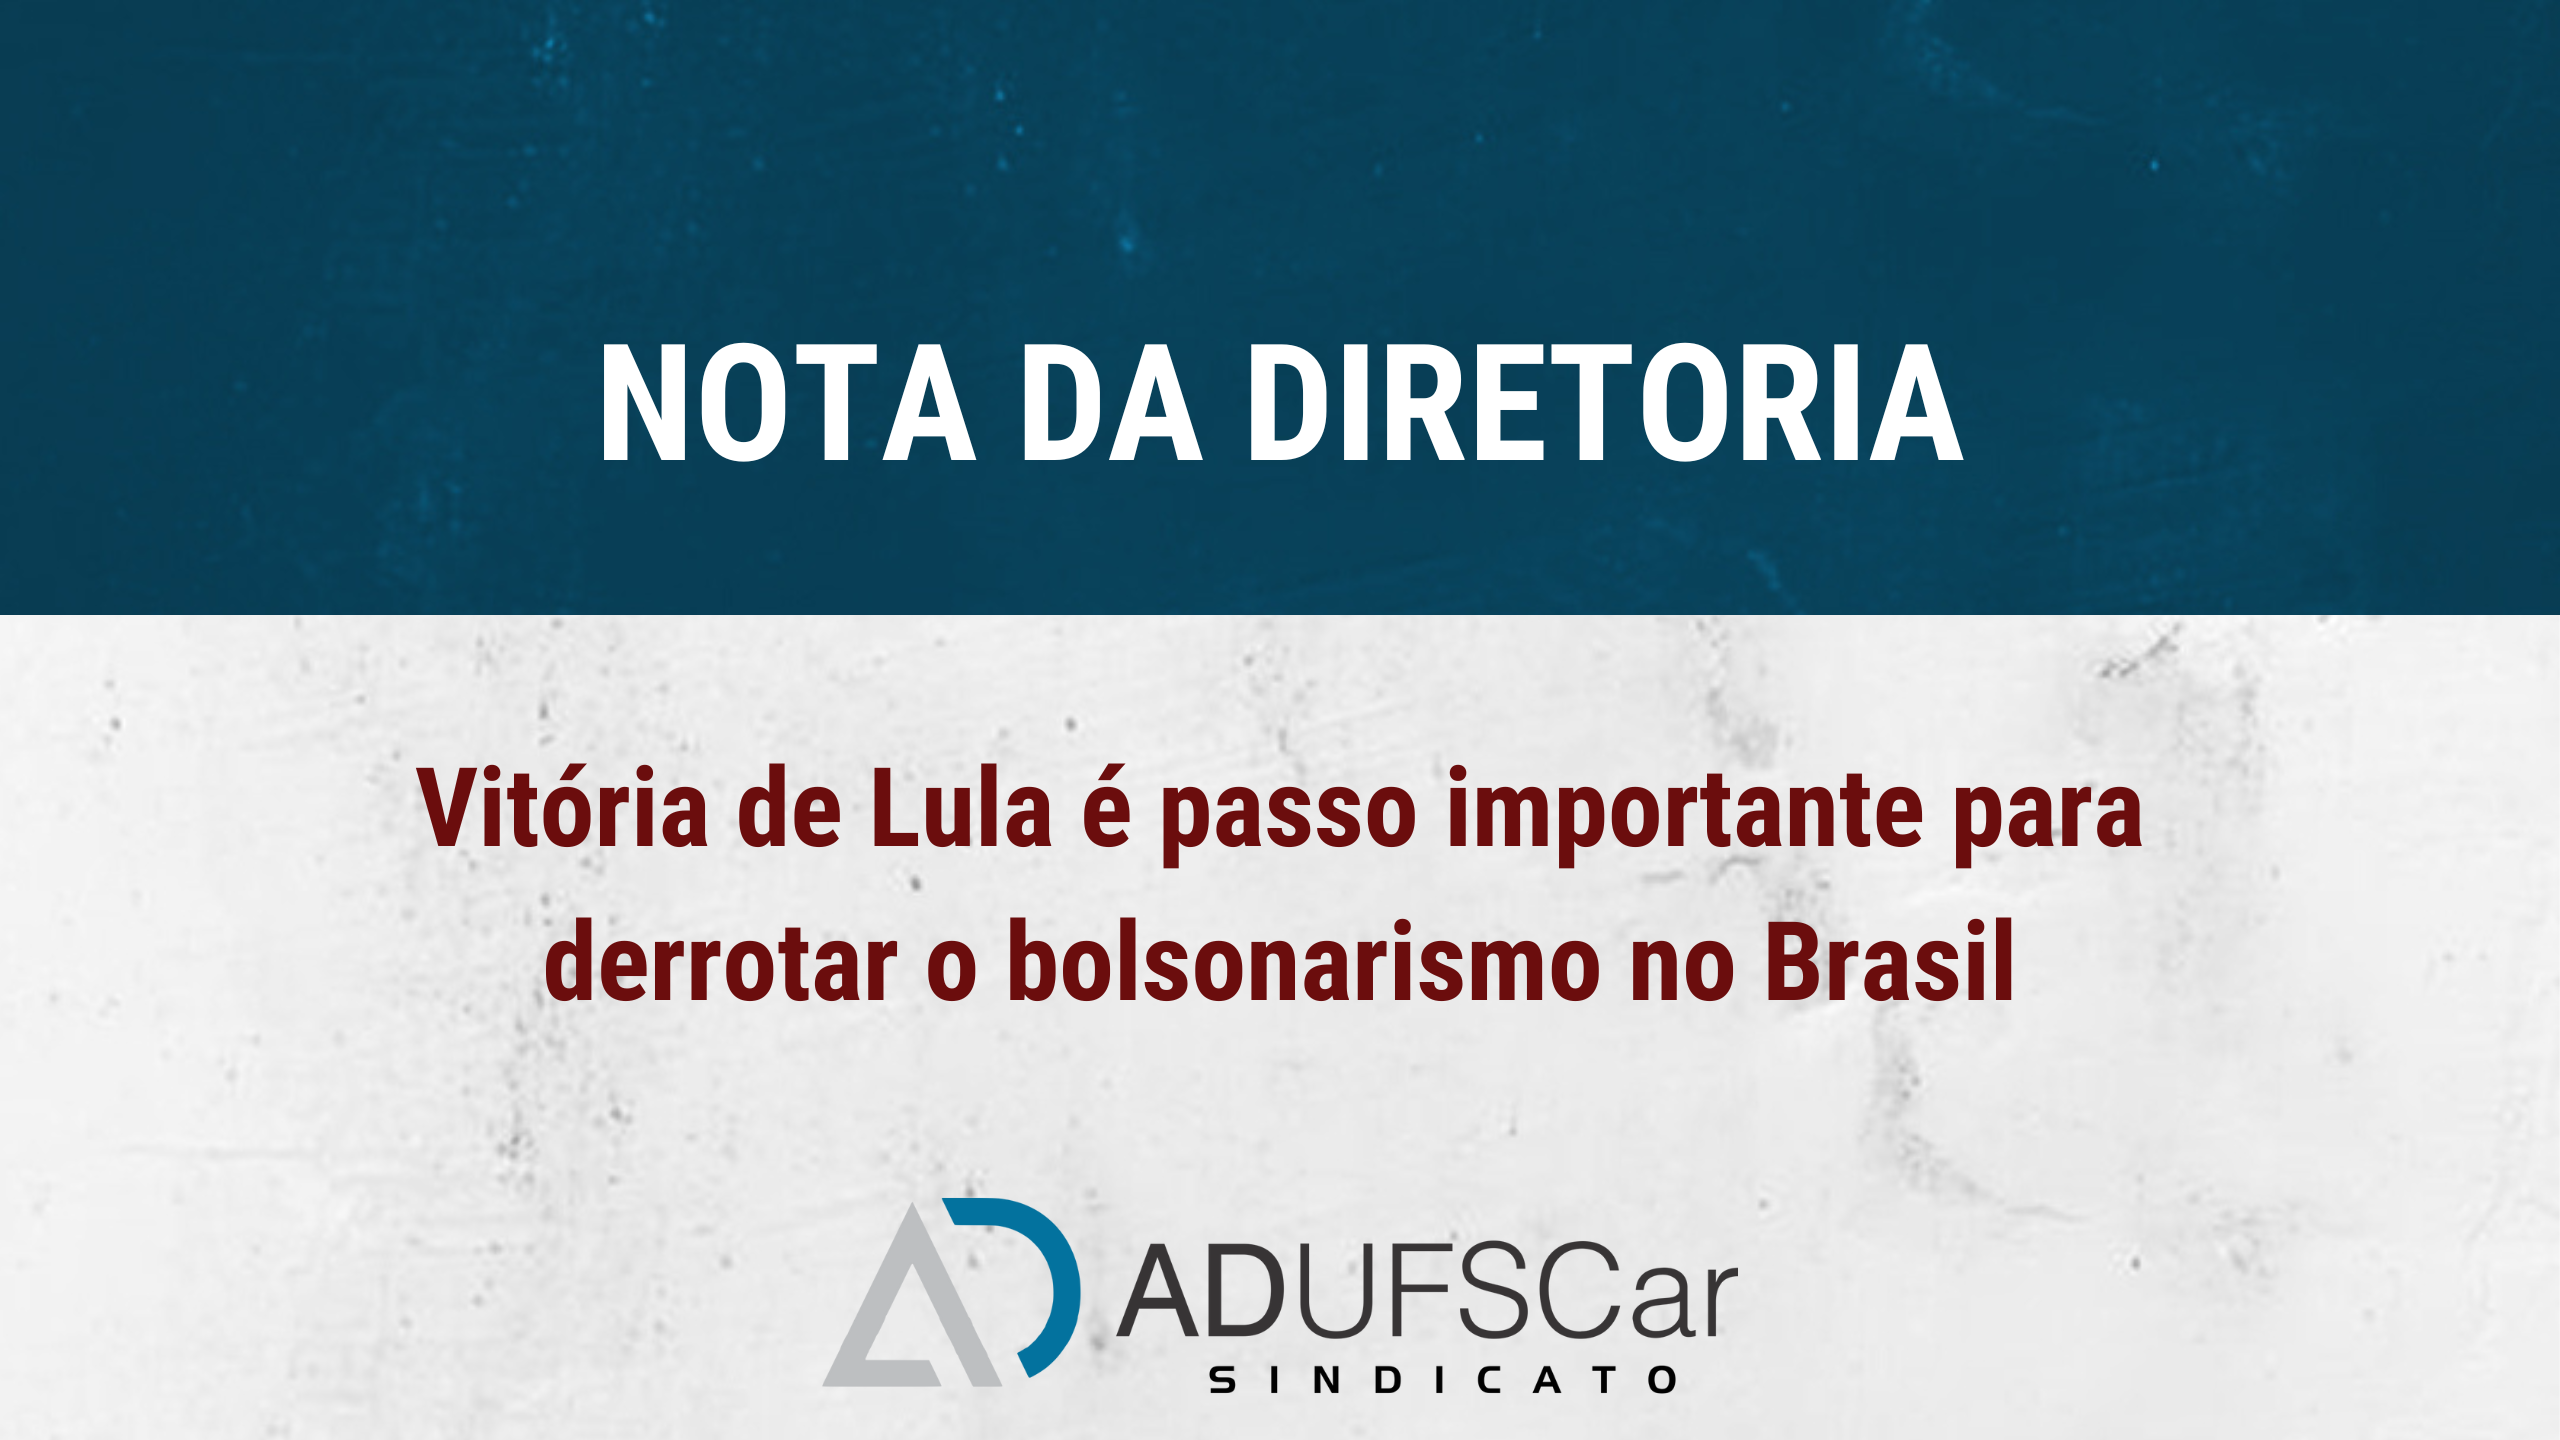 Nota da Diretoria: Vitória de Lula é passo importante para derrotar o bolsonarismo no Brasil